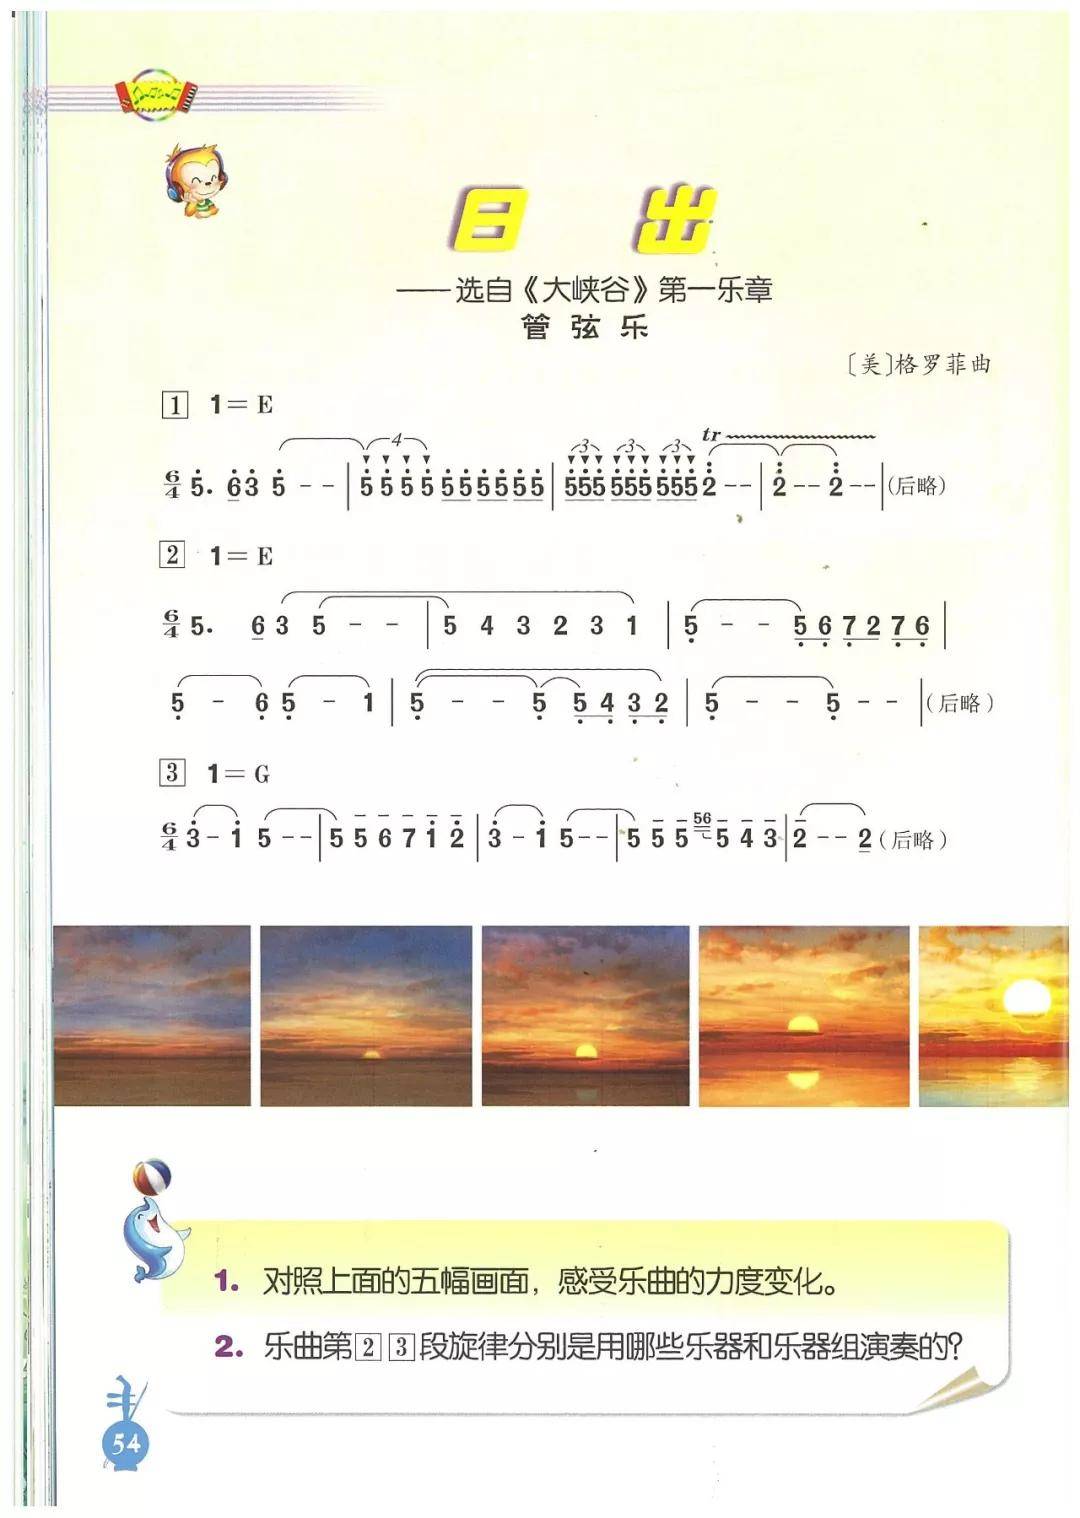 人音版曲谱_最亲的人曲谱(2)